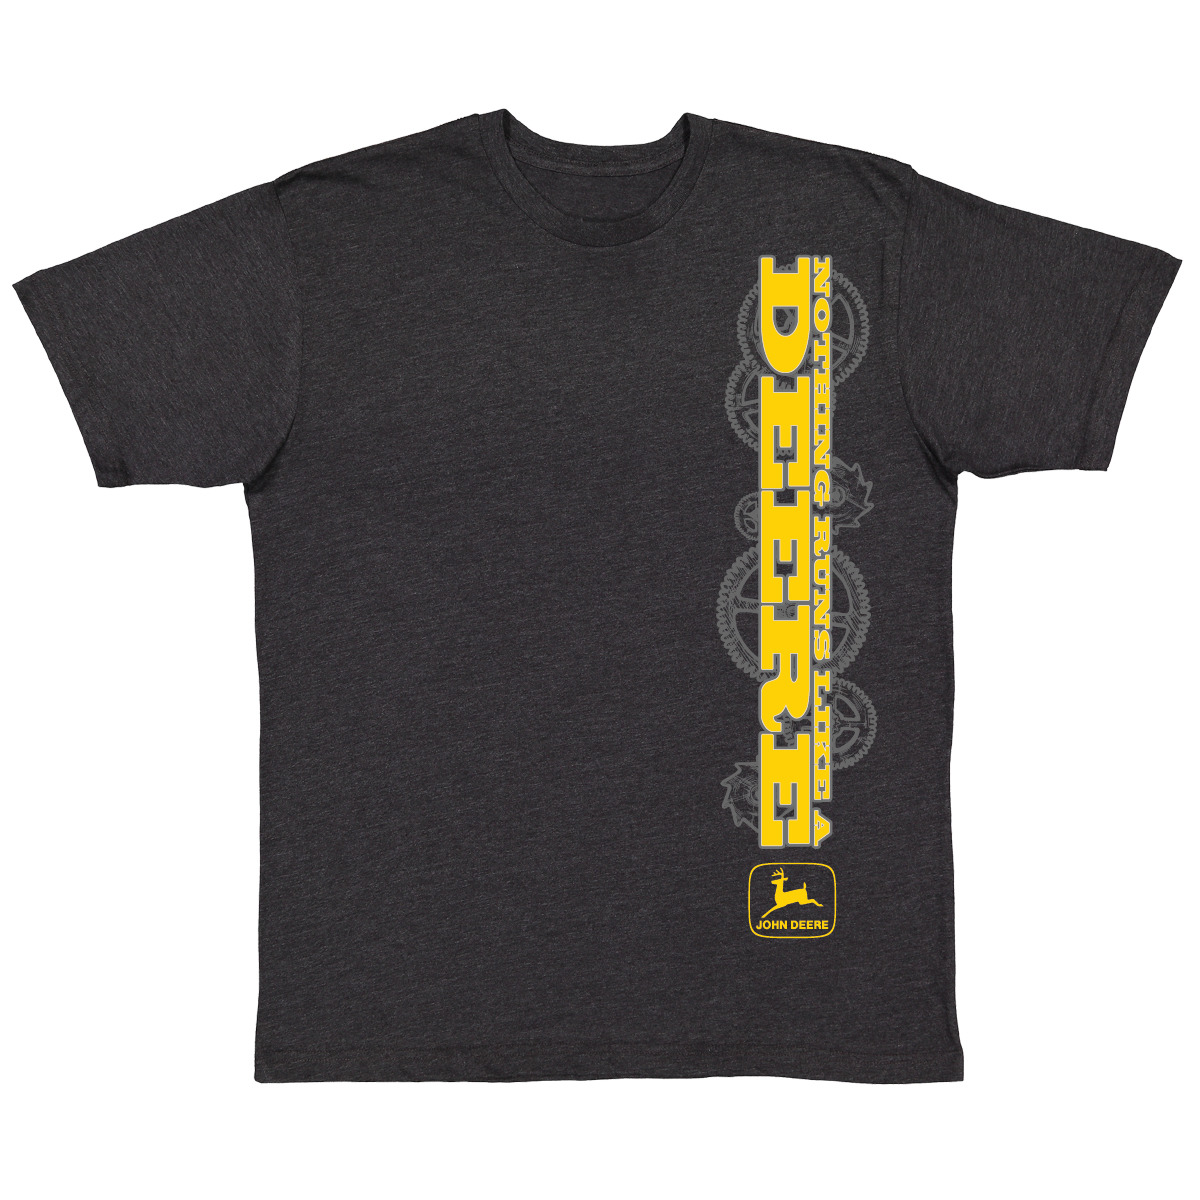 Nothing Runs Like a Deere T-Shirt - LP80124